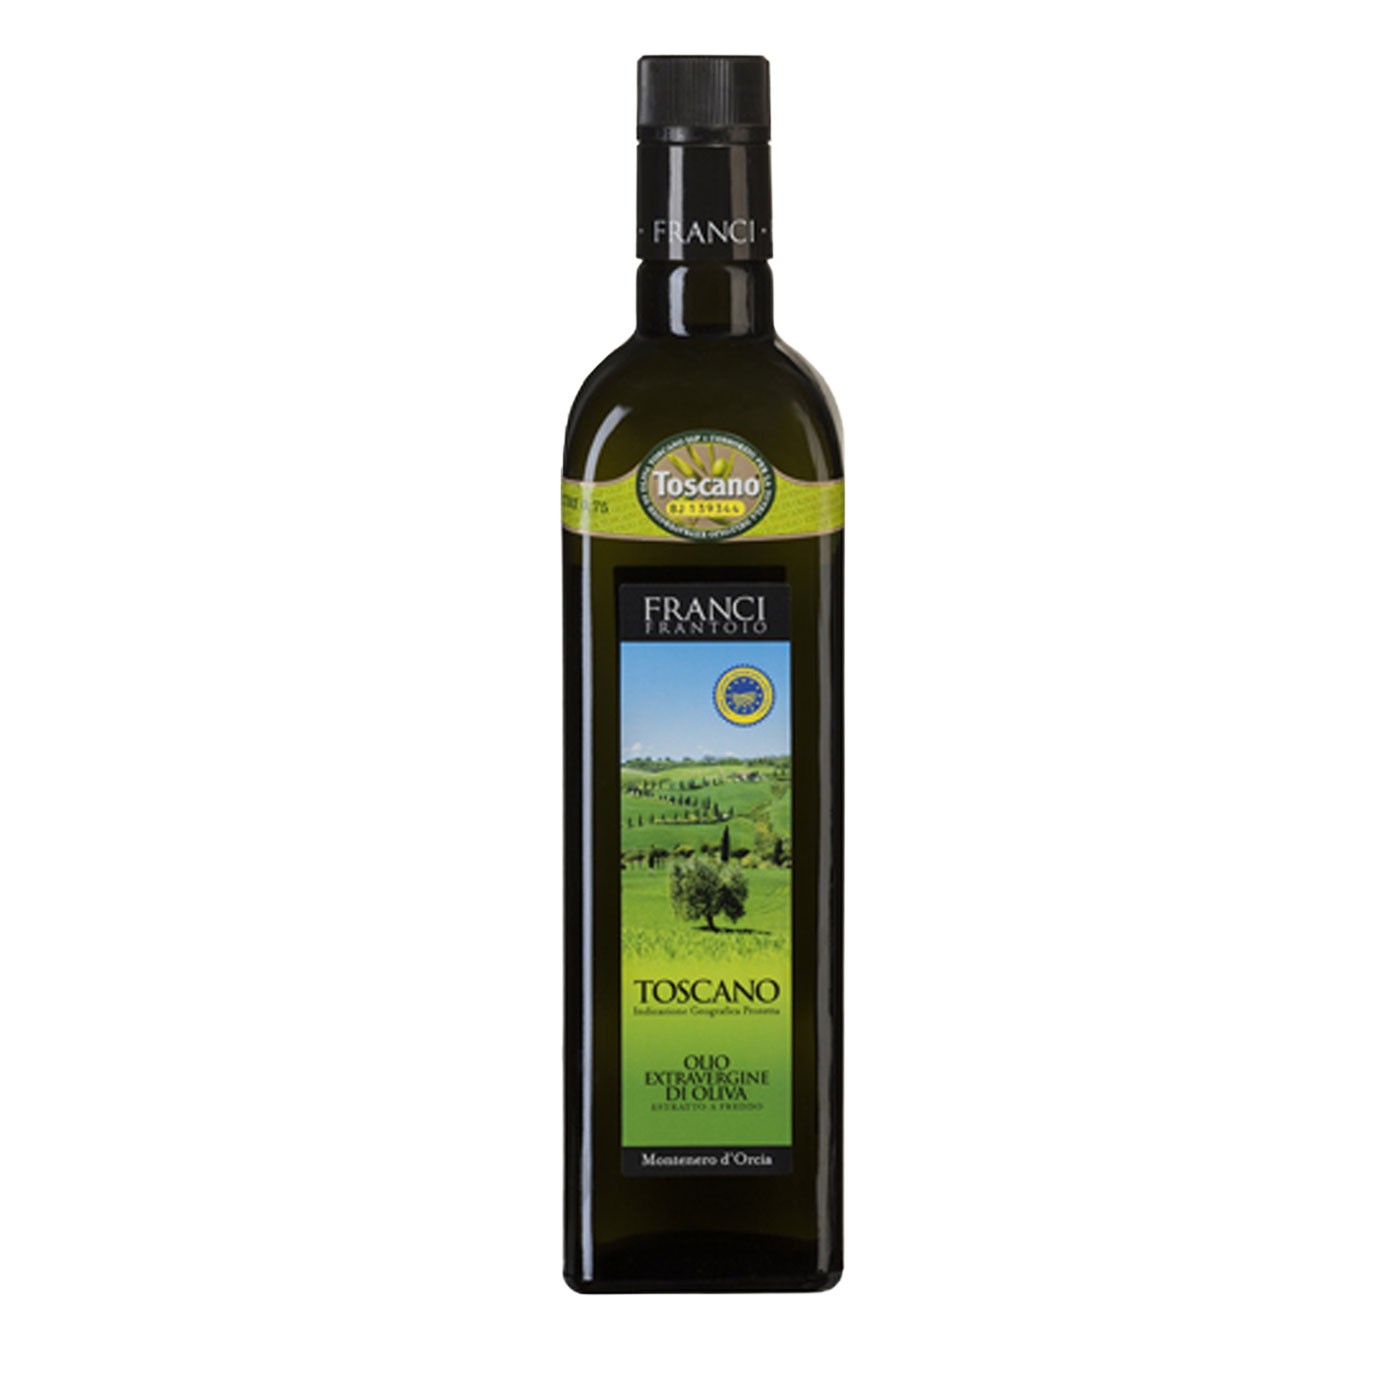 Toscano Franci IGP Extra Virgin Olive Oil 25.4oz